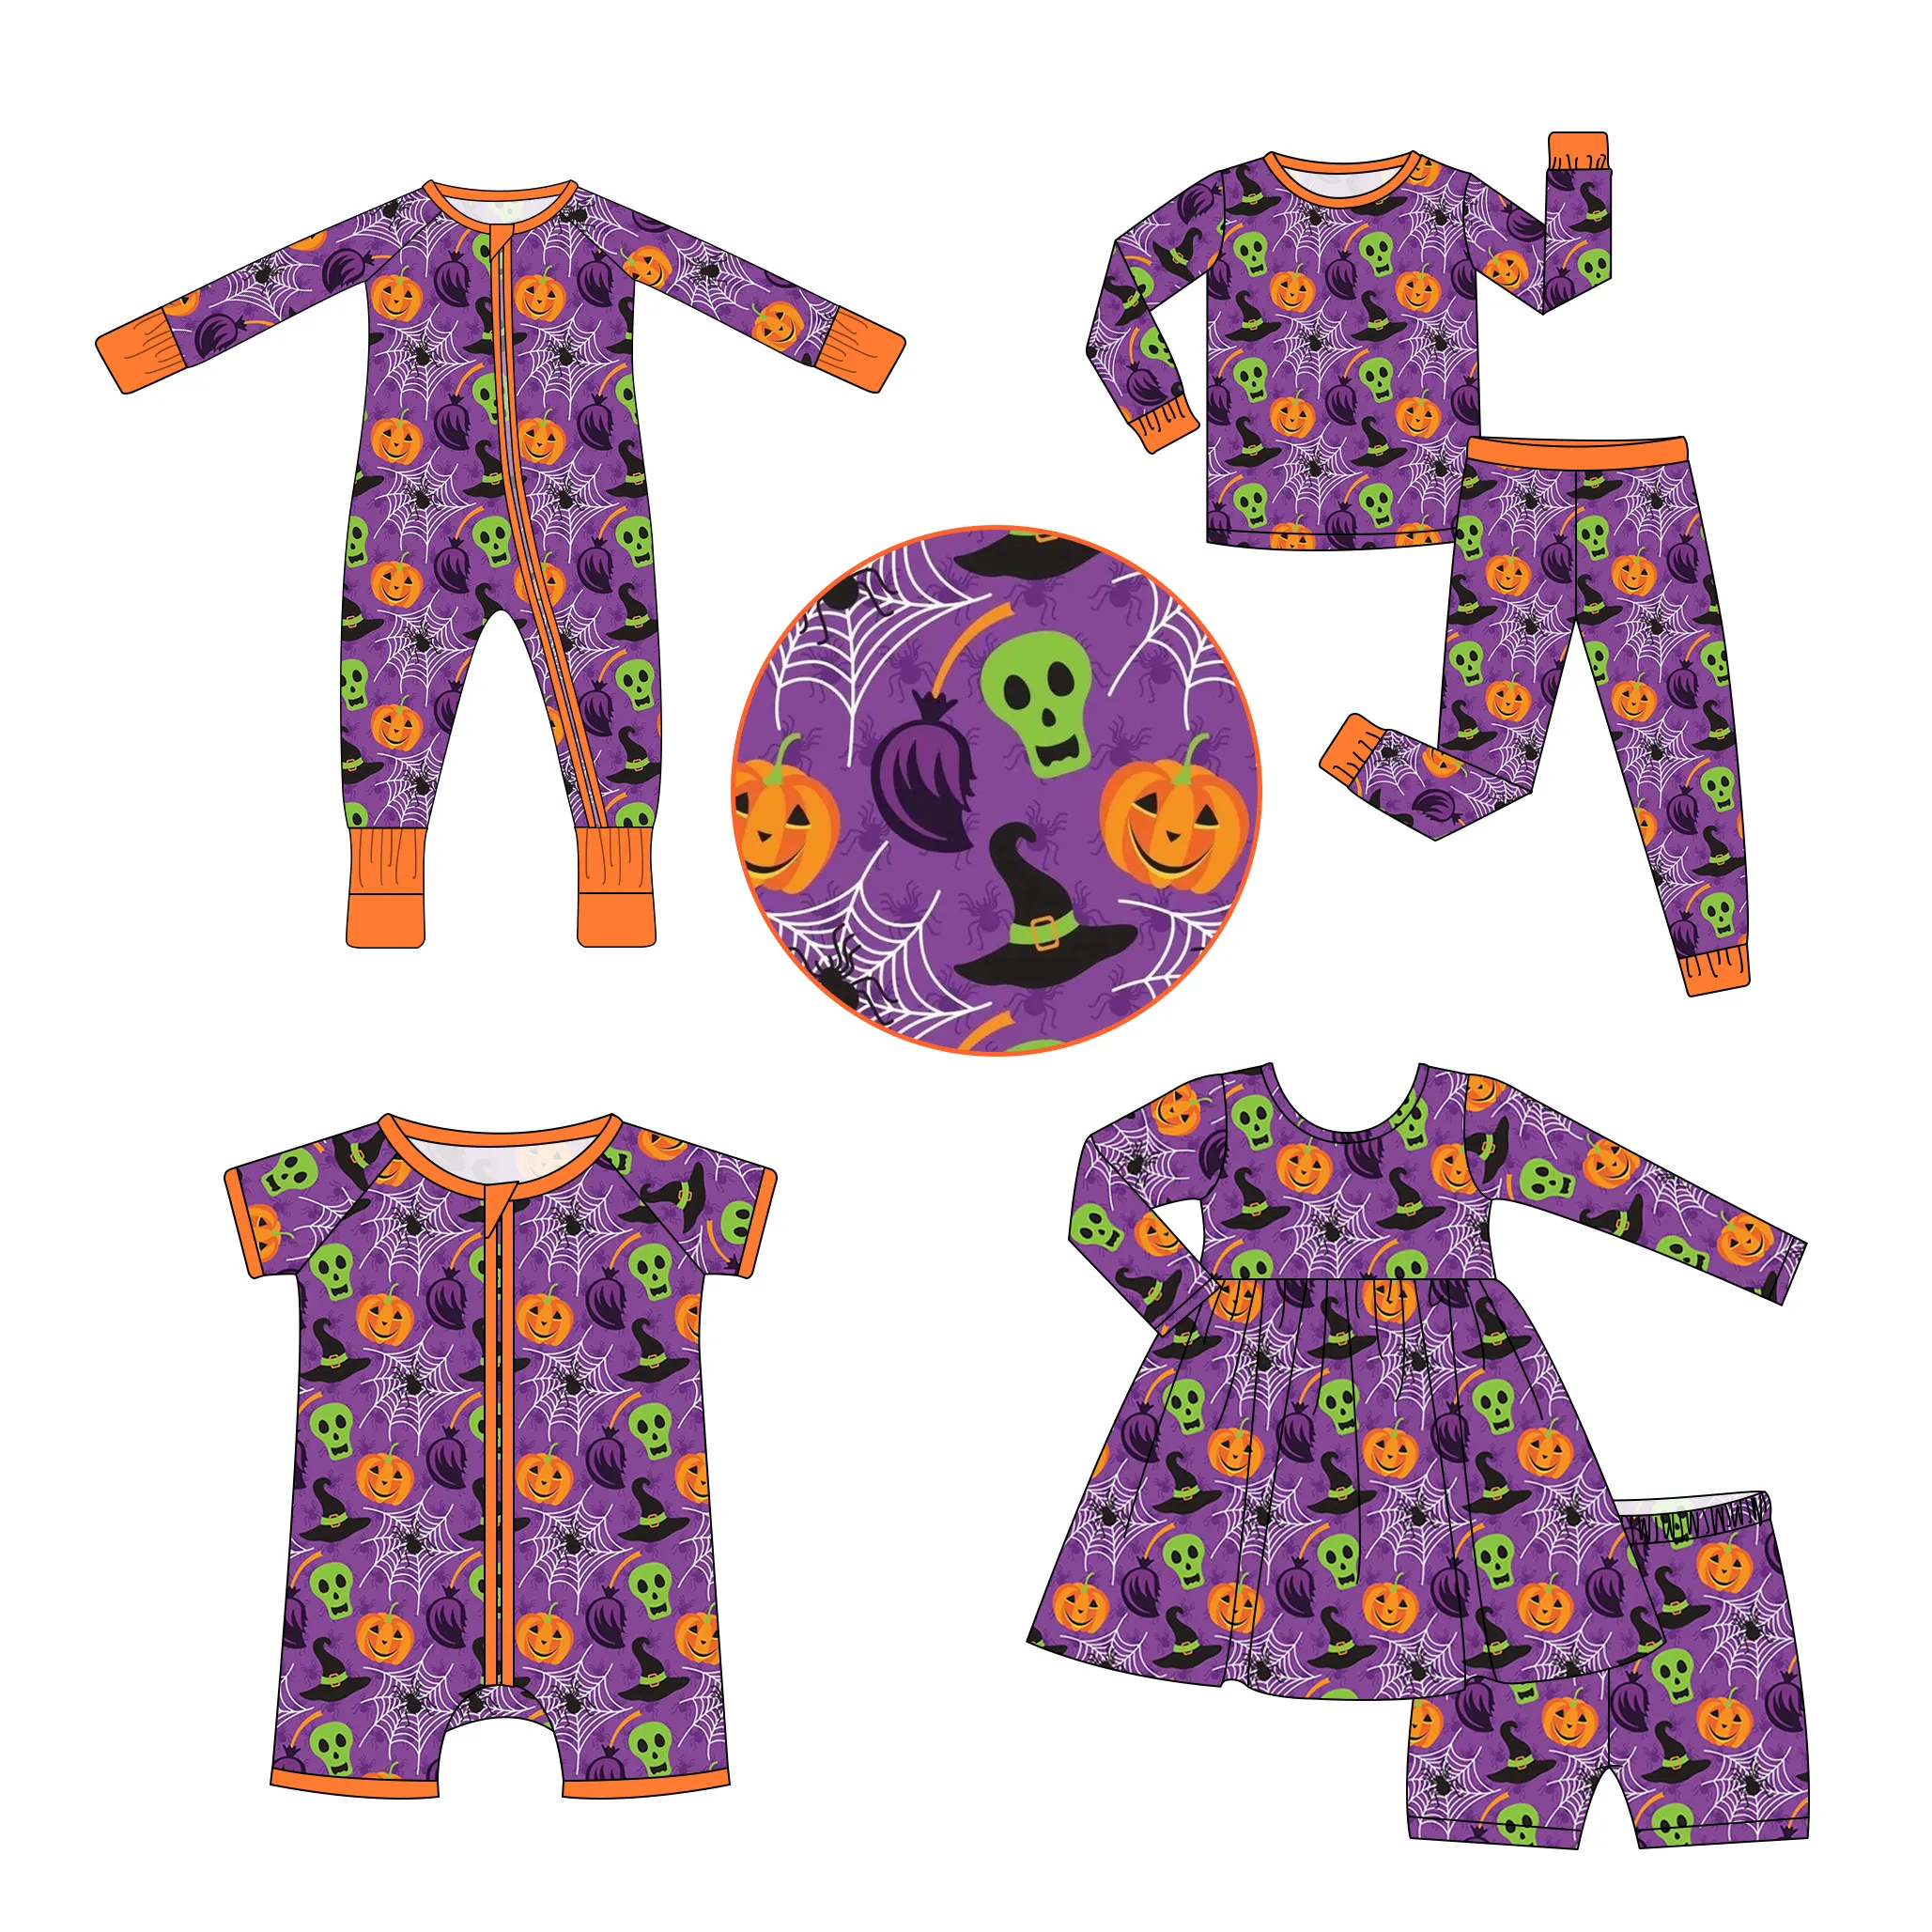 Nouveaux modèles de vêtements pour enfants mignon Halloween imprimer personnalisé bébé fille pyjamas boutique fille garçon barboteuse